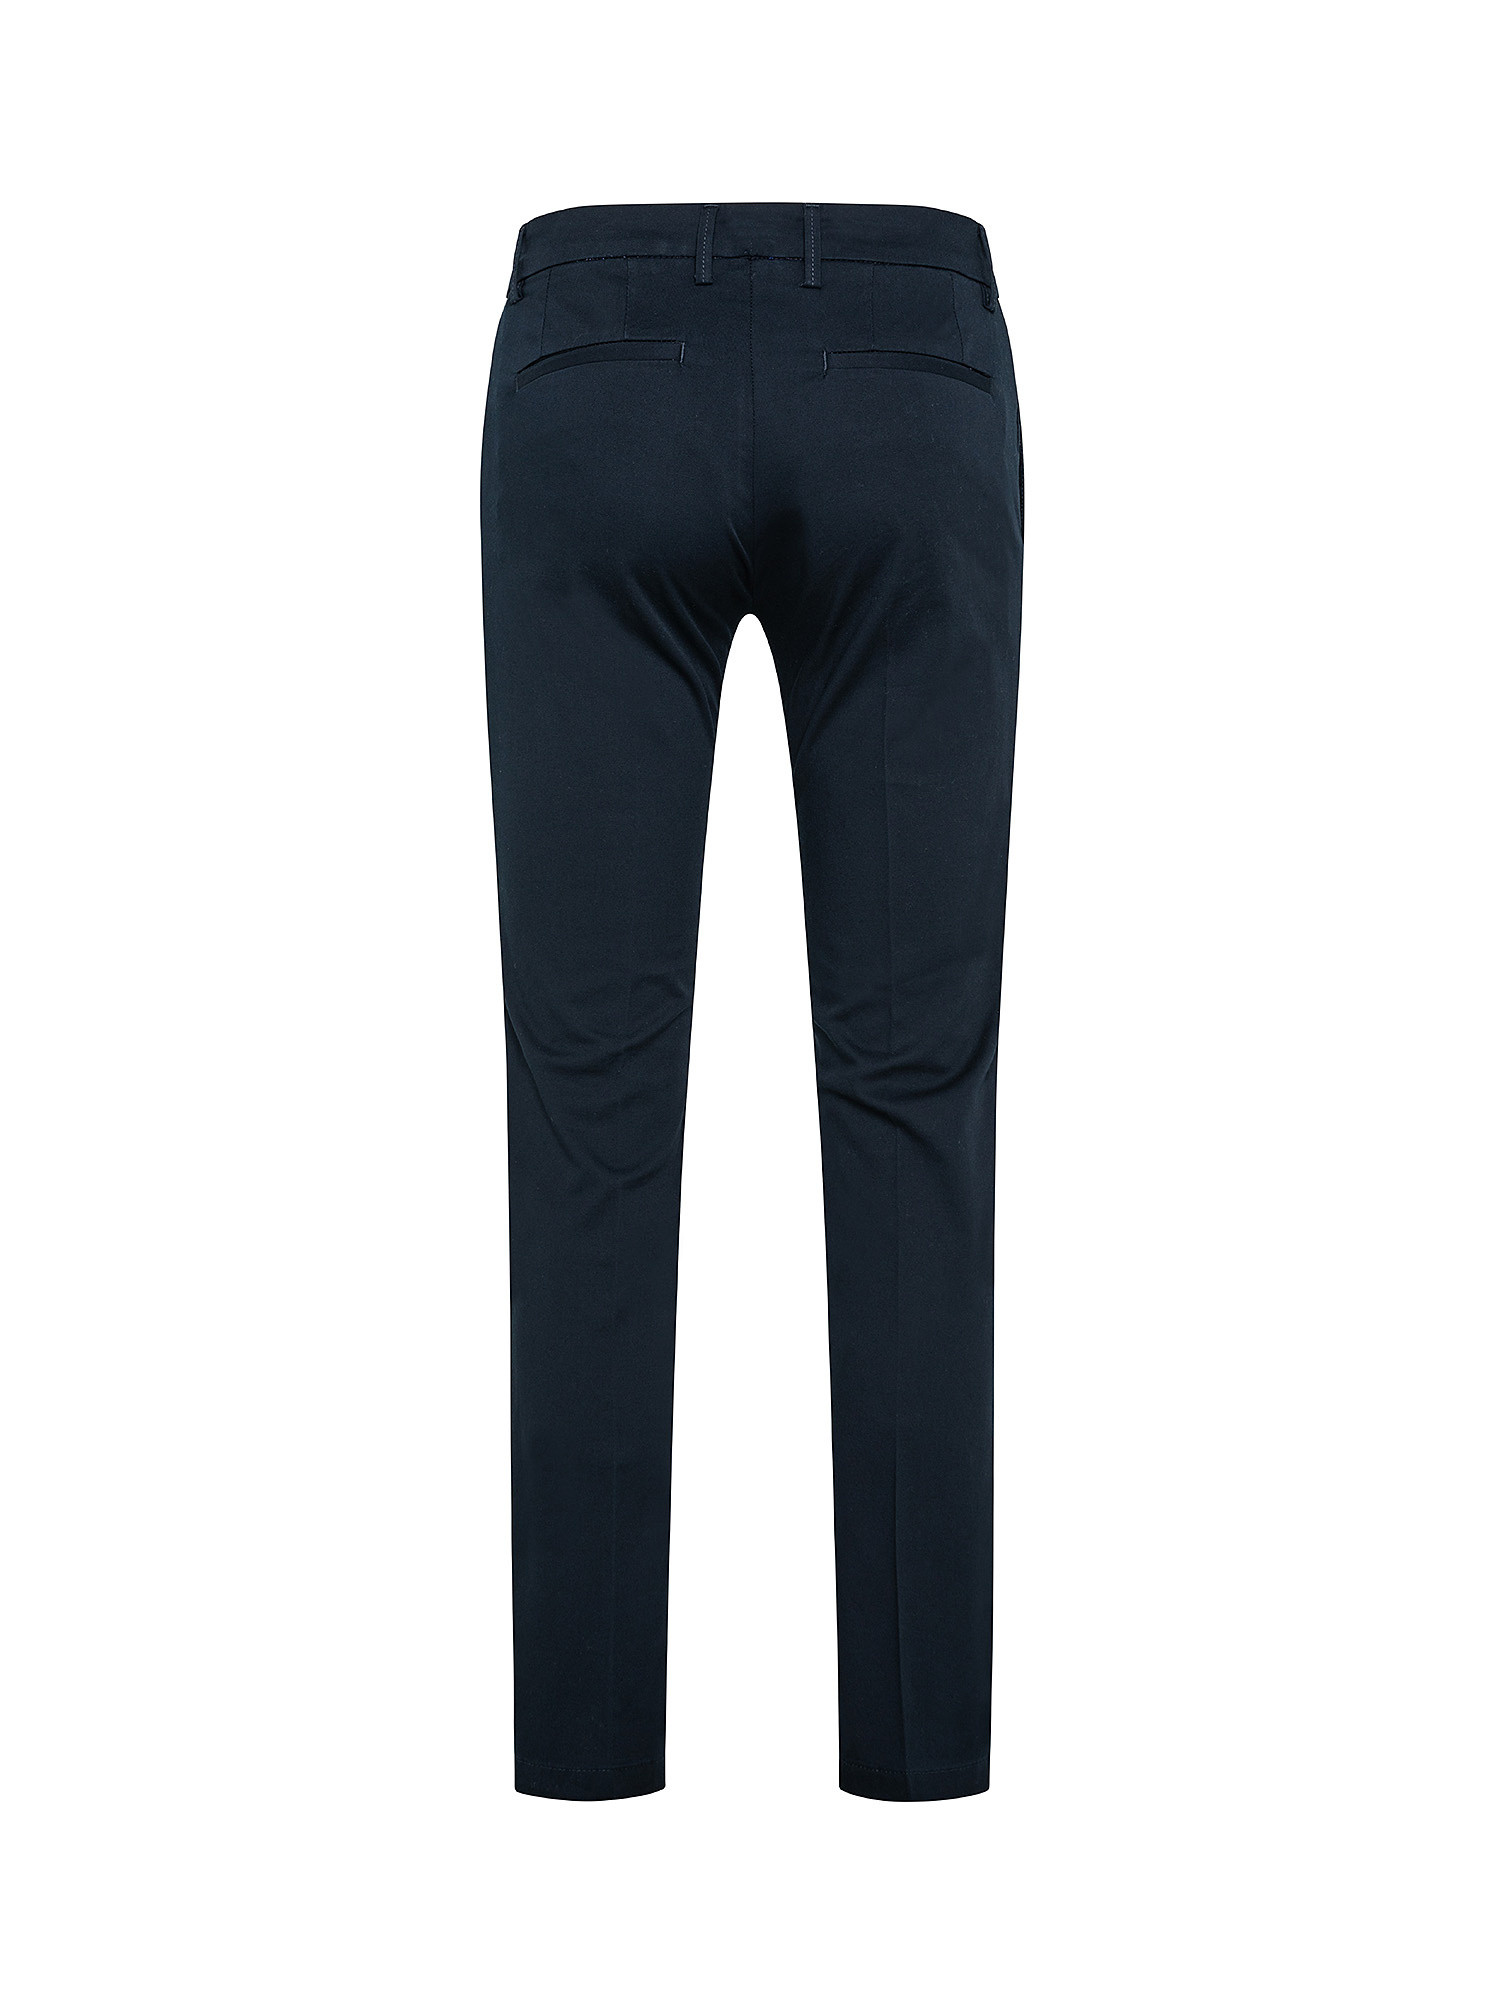 Pantalone chino, Blu, large image number 1